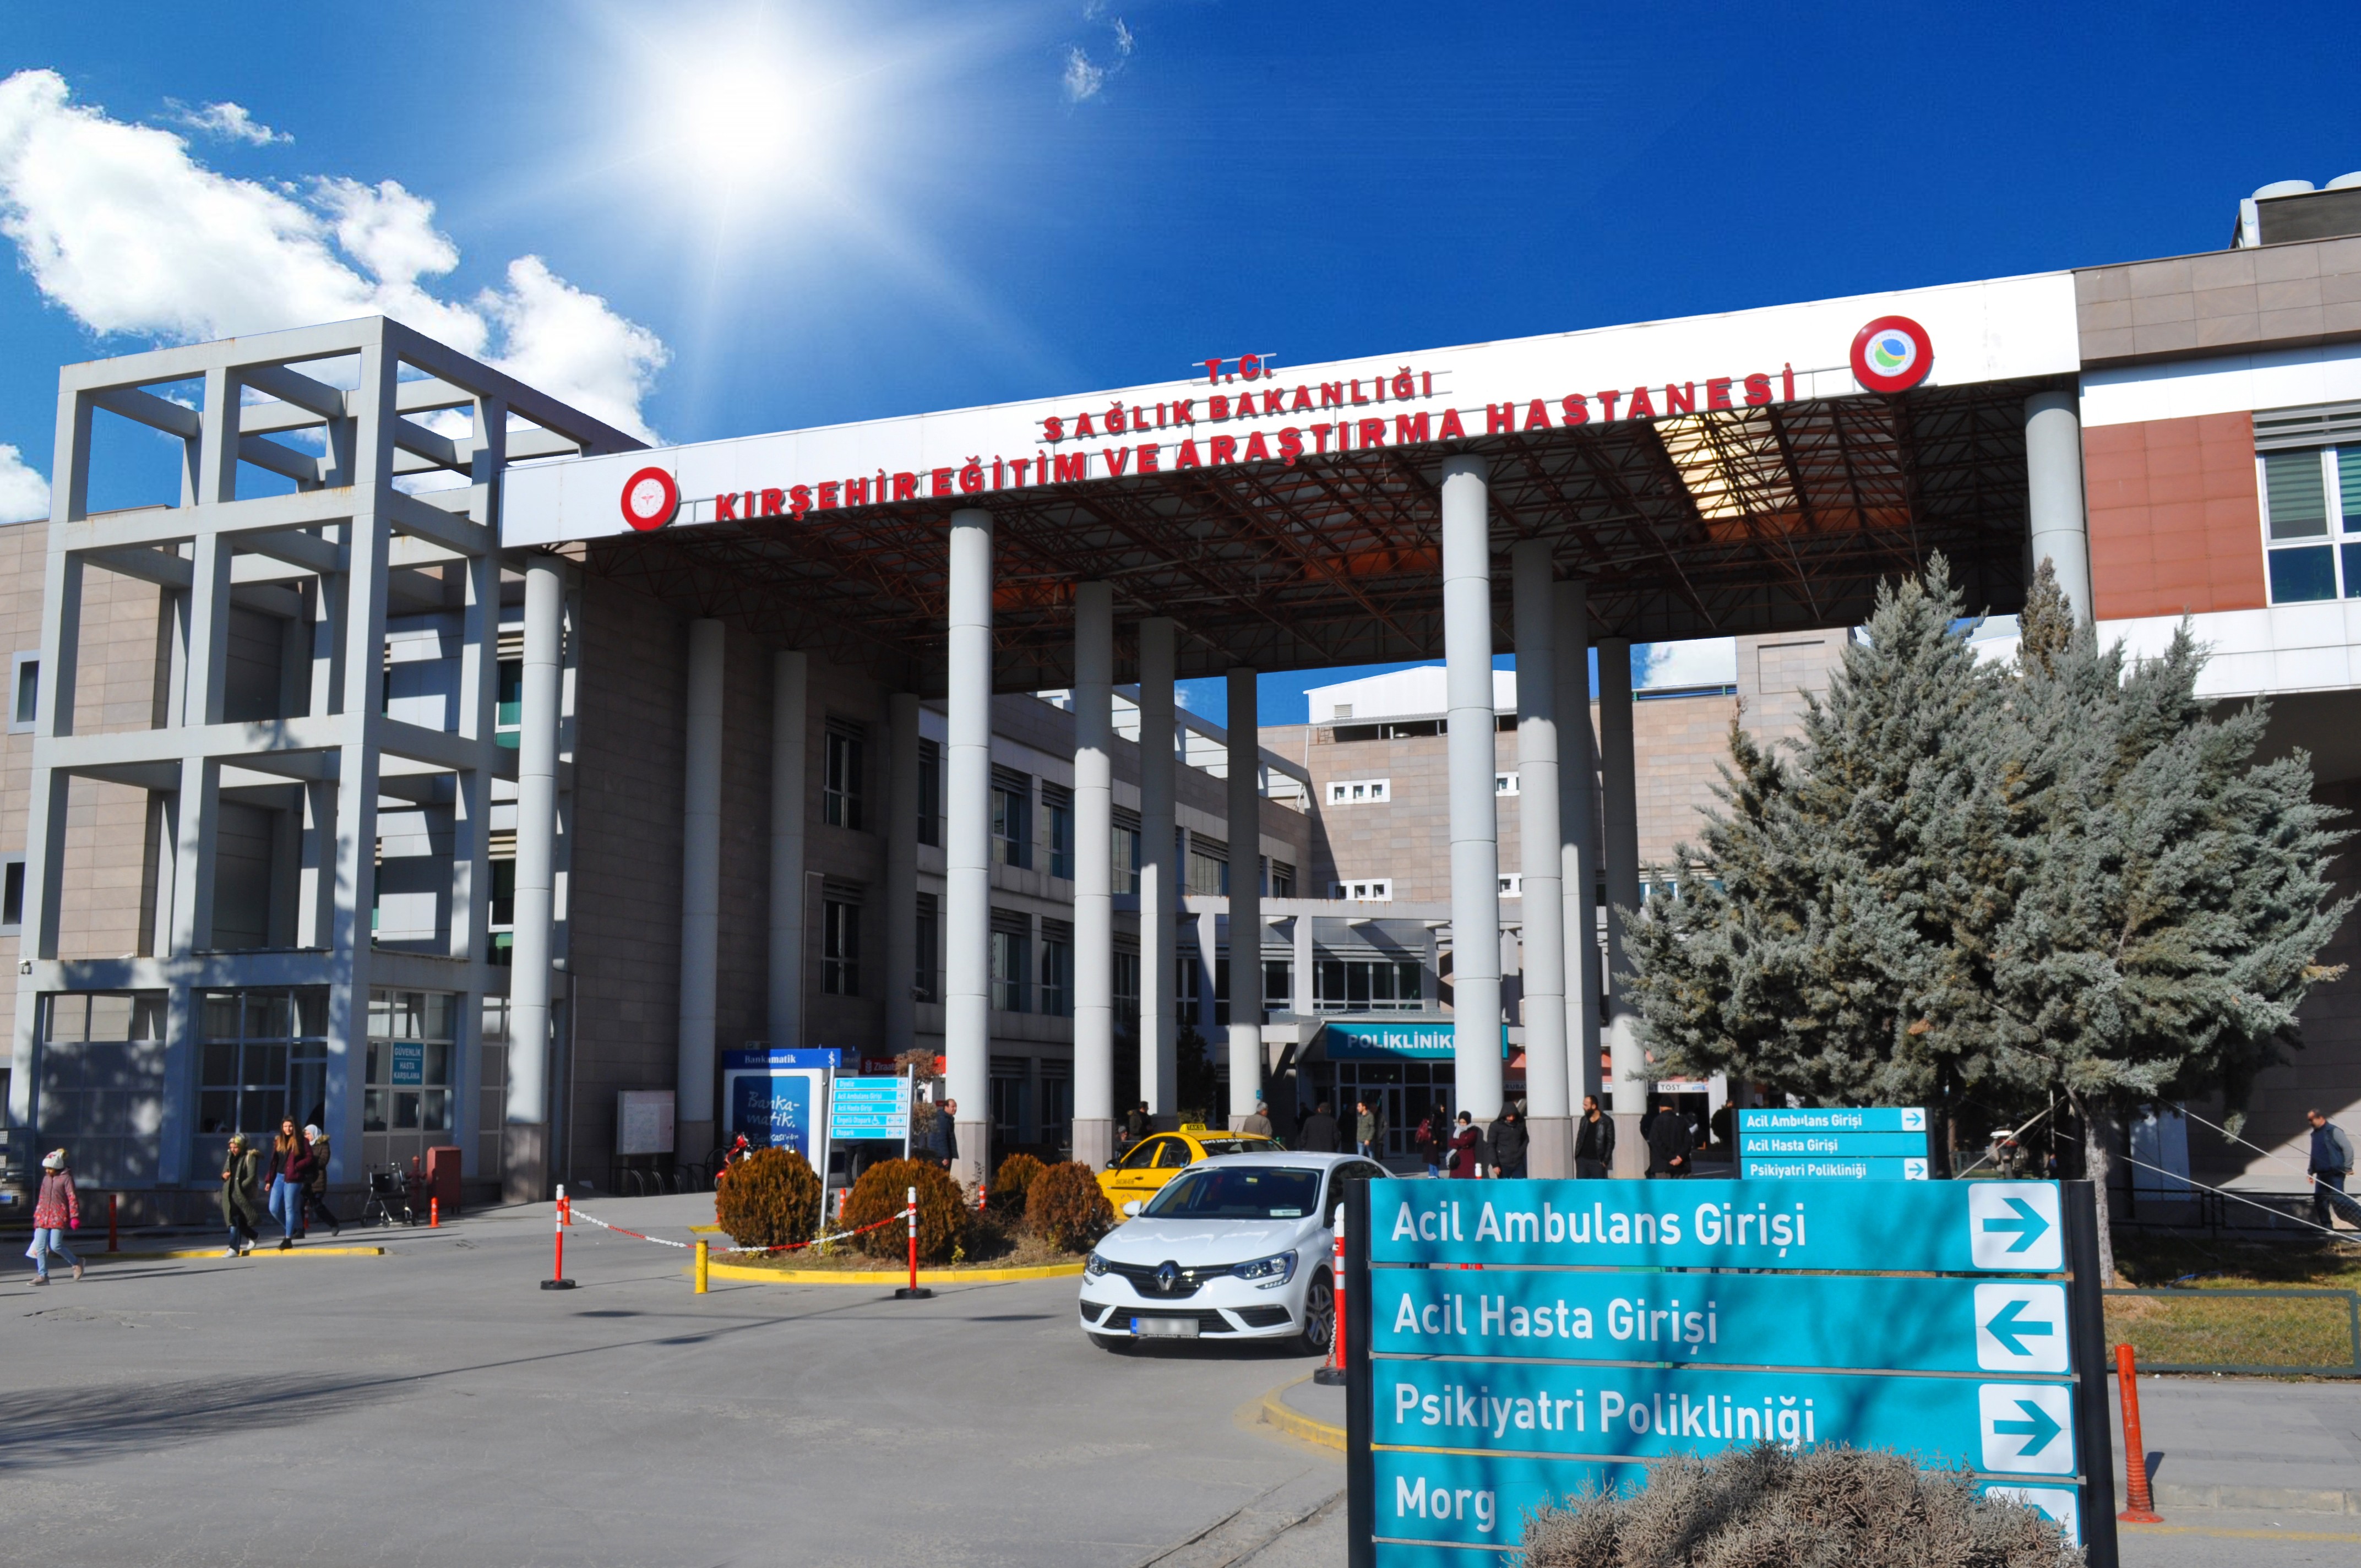 Kırşehir Eğitim ve Araştırma Hastanesi bir yılda 1 milyon 133 bin hastaya baktı